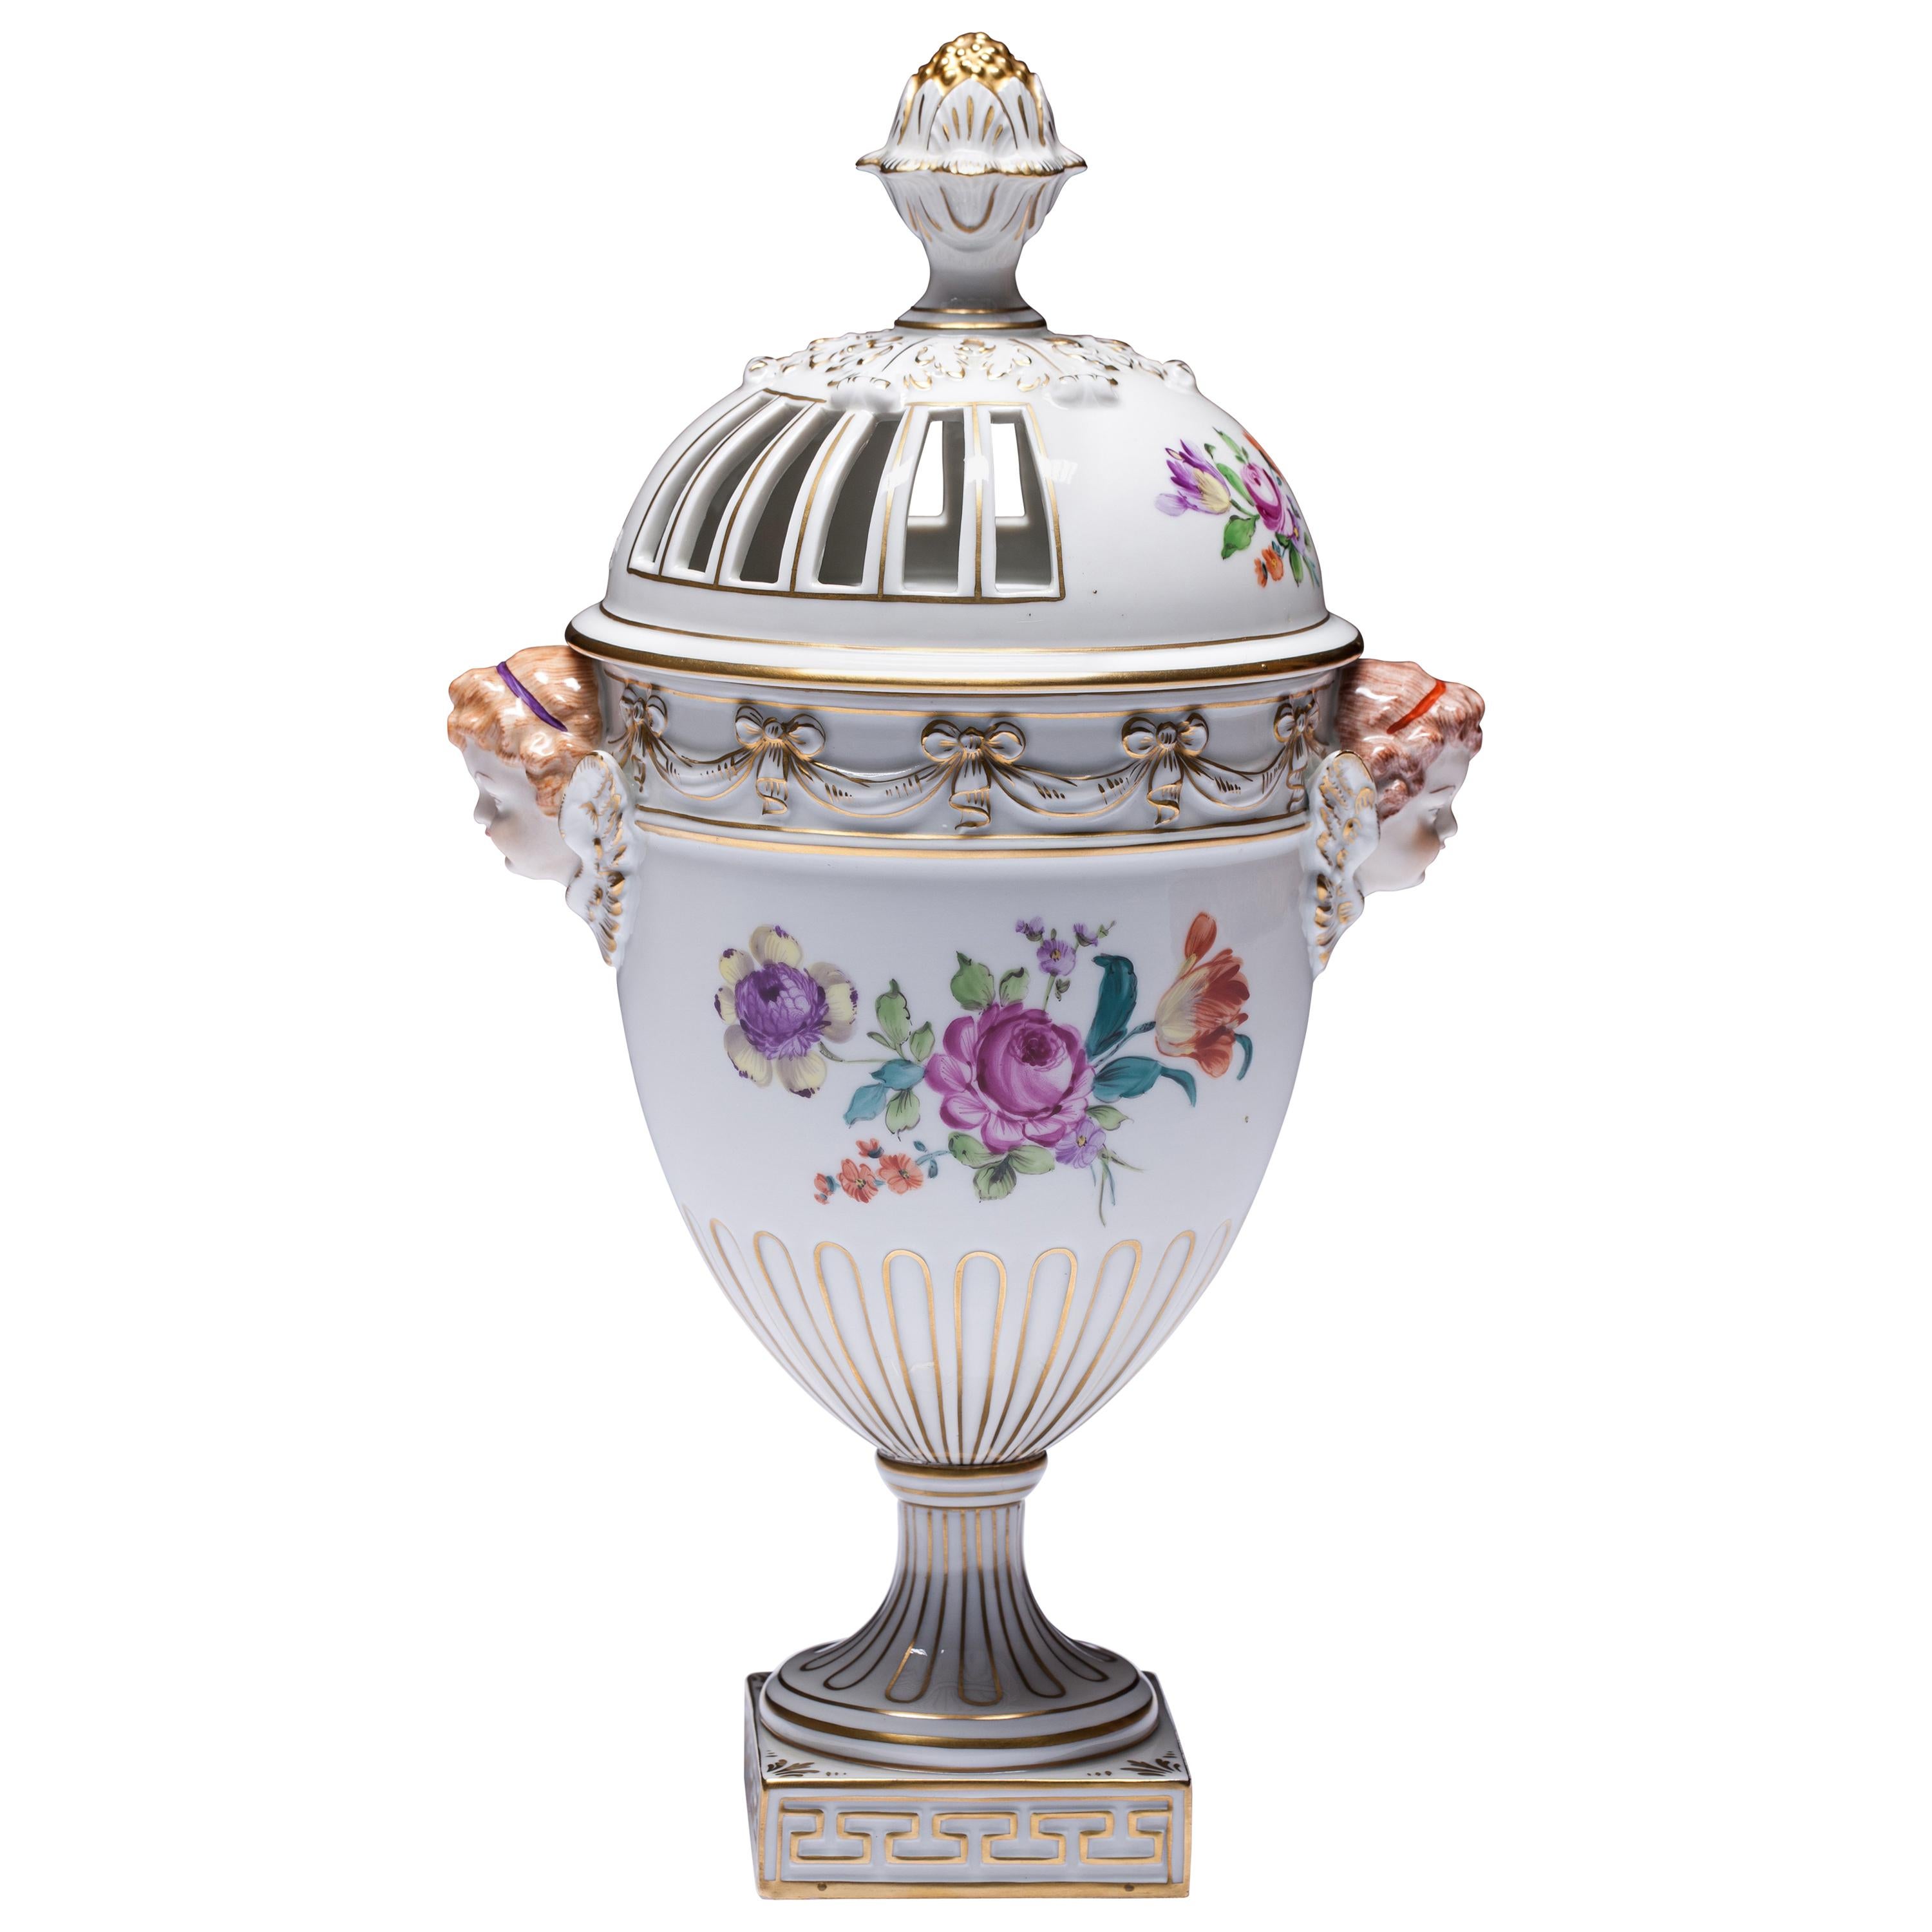 Carl Thieme Dresden Pot Pourri Vase Mithological Head Handles Urn Porcelain For Sale